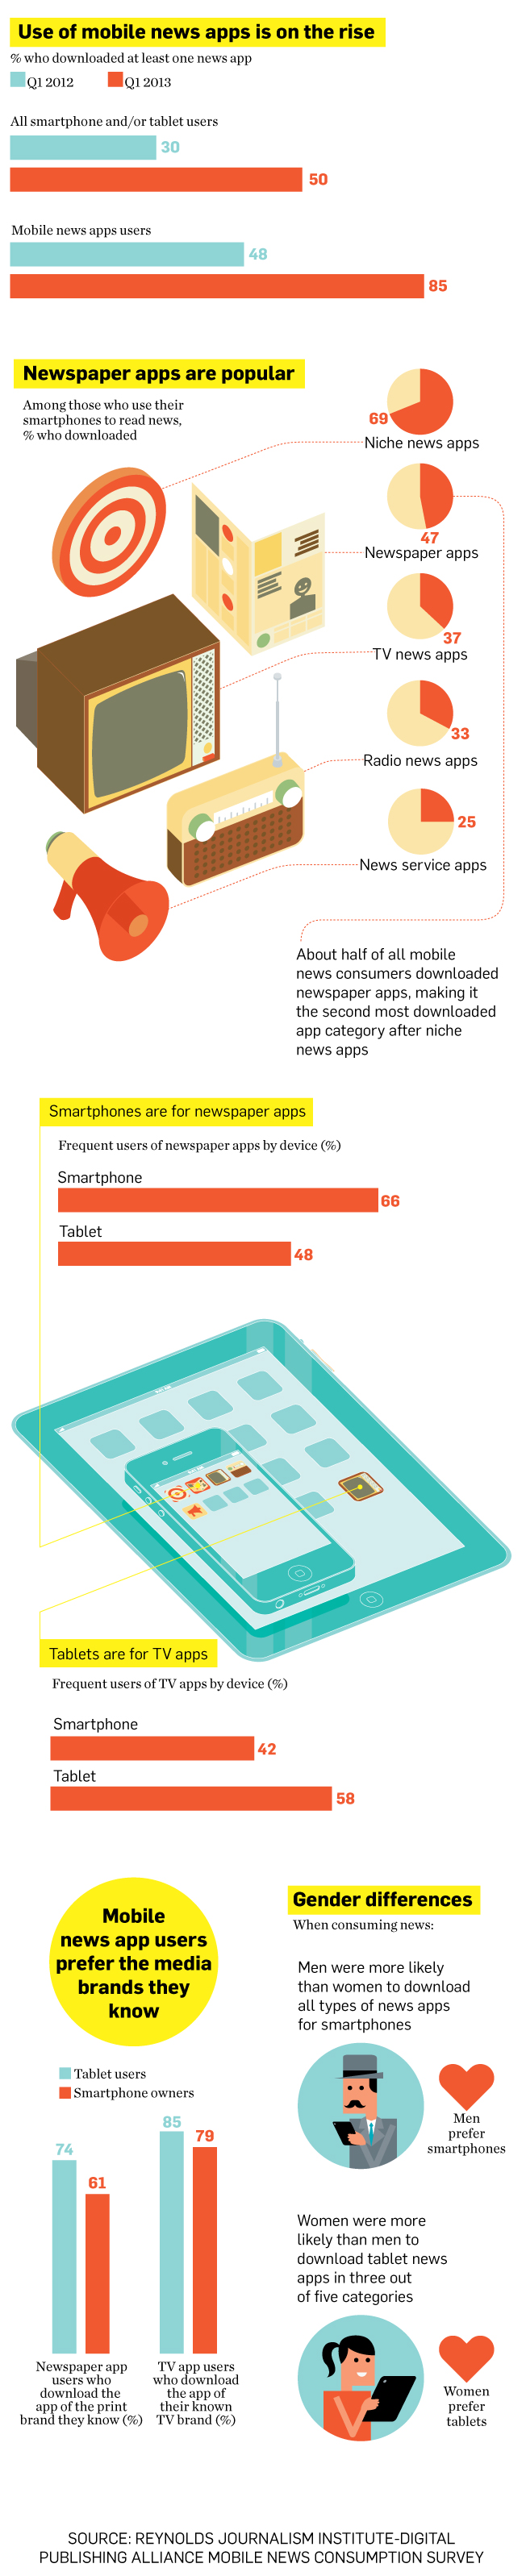 Infografía: ¿Cómo utilizamos las apps para informarnos?